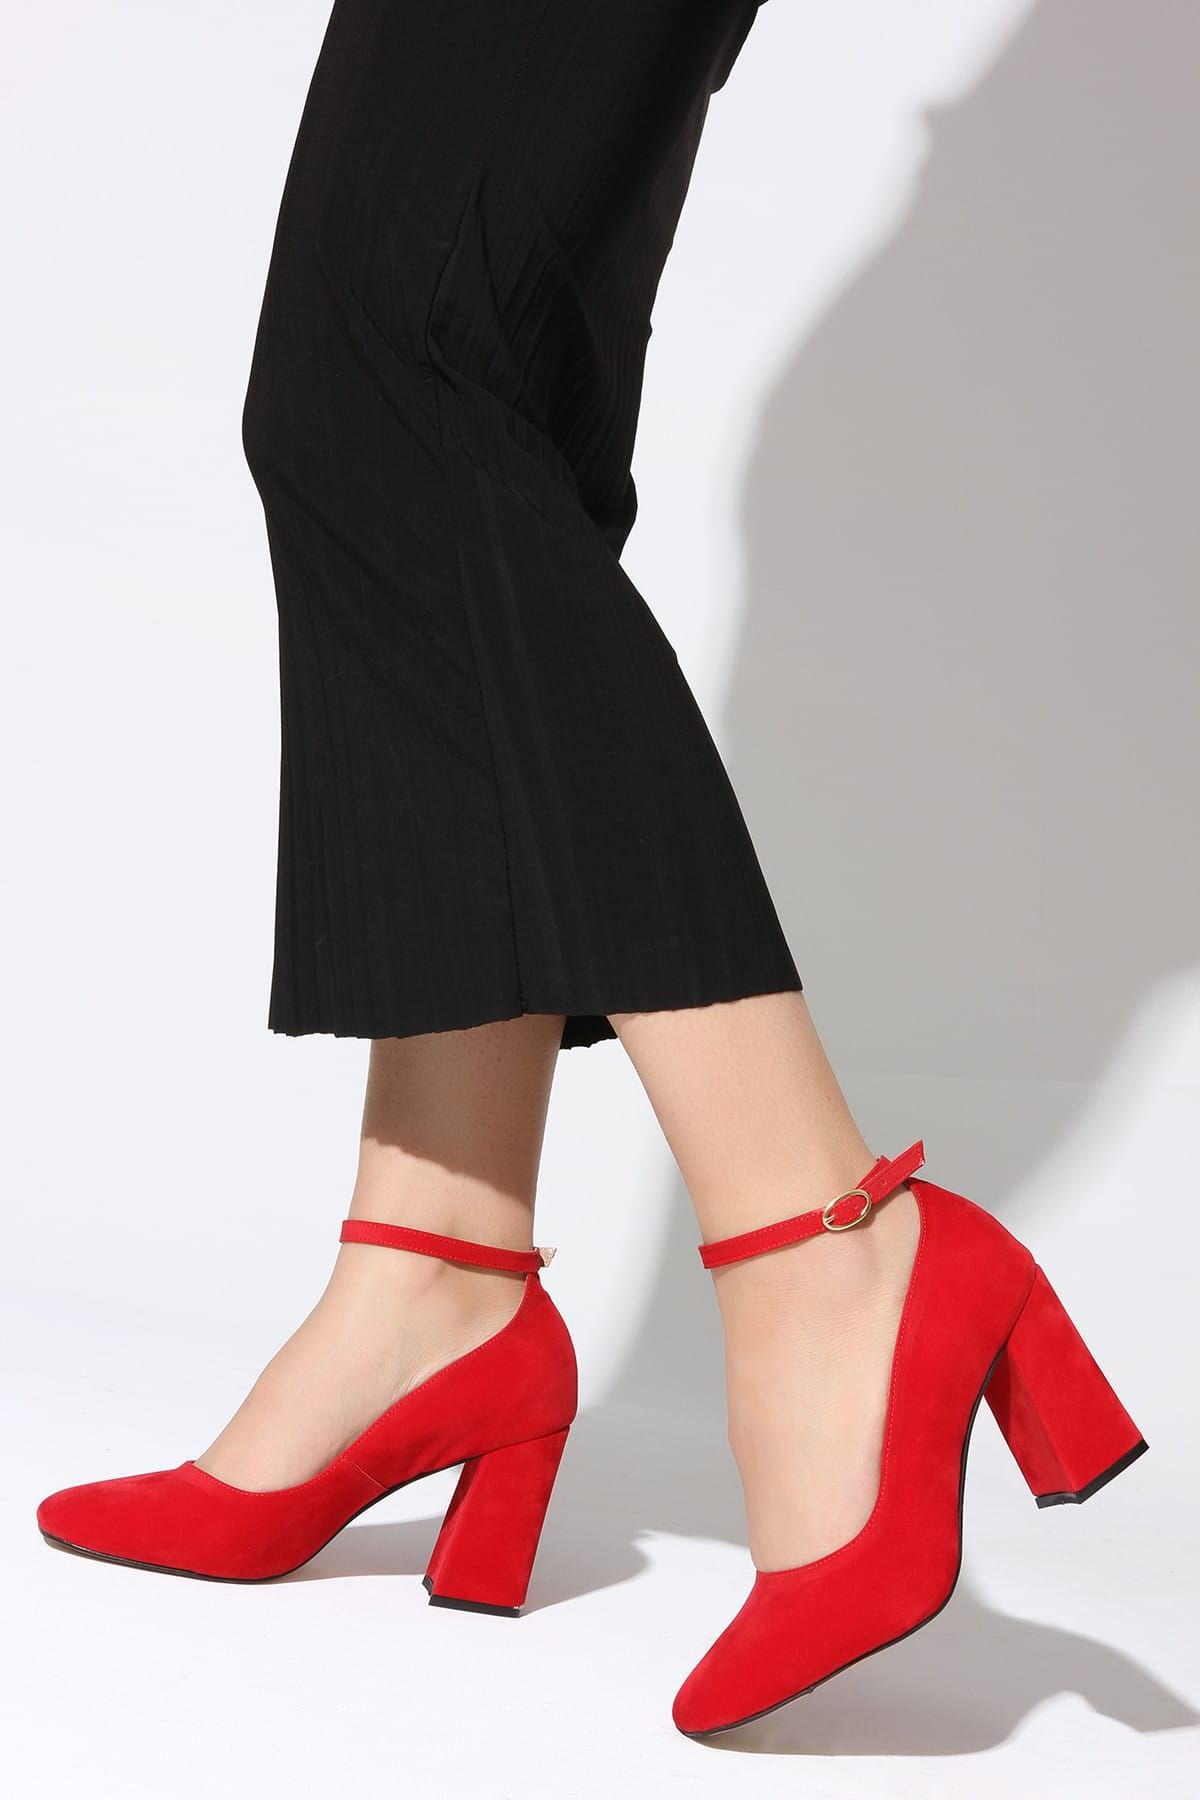 Rovigo Kırmızı Kadın Topuklu Ayakkabı 11112014189-2-03